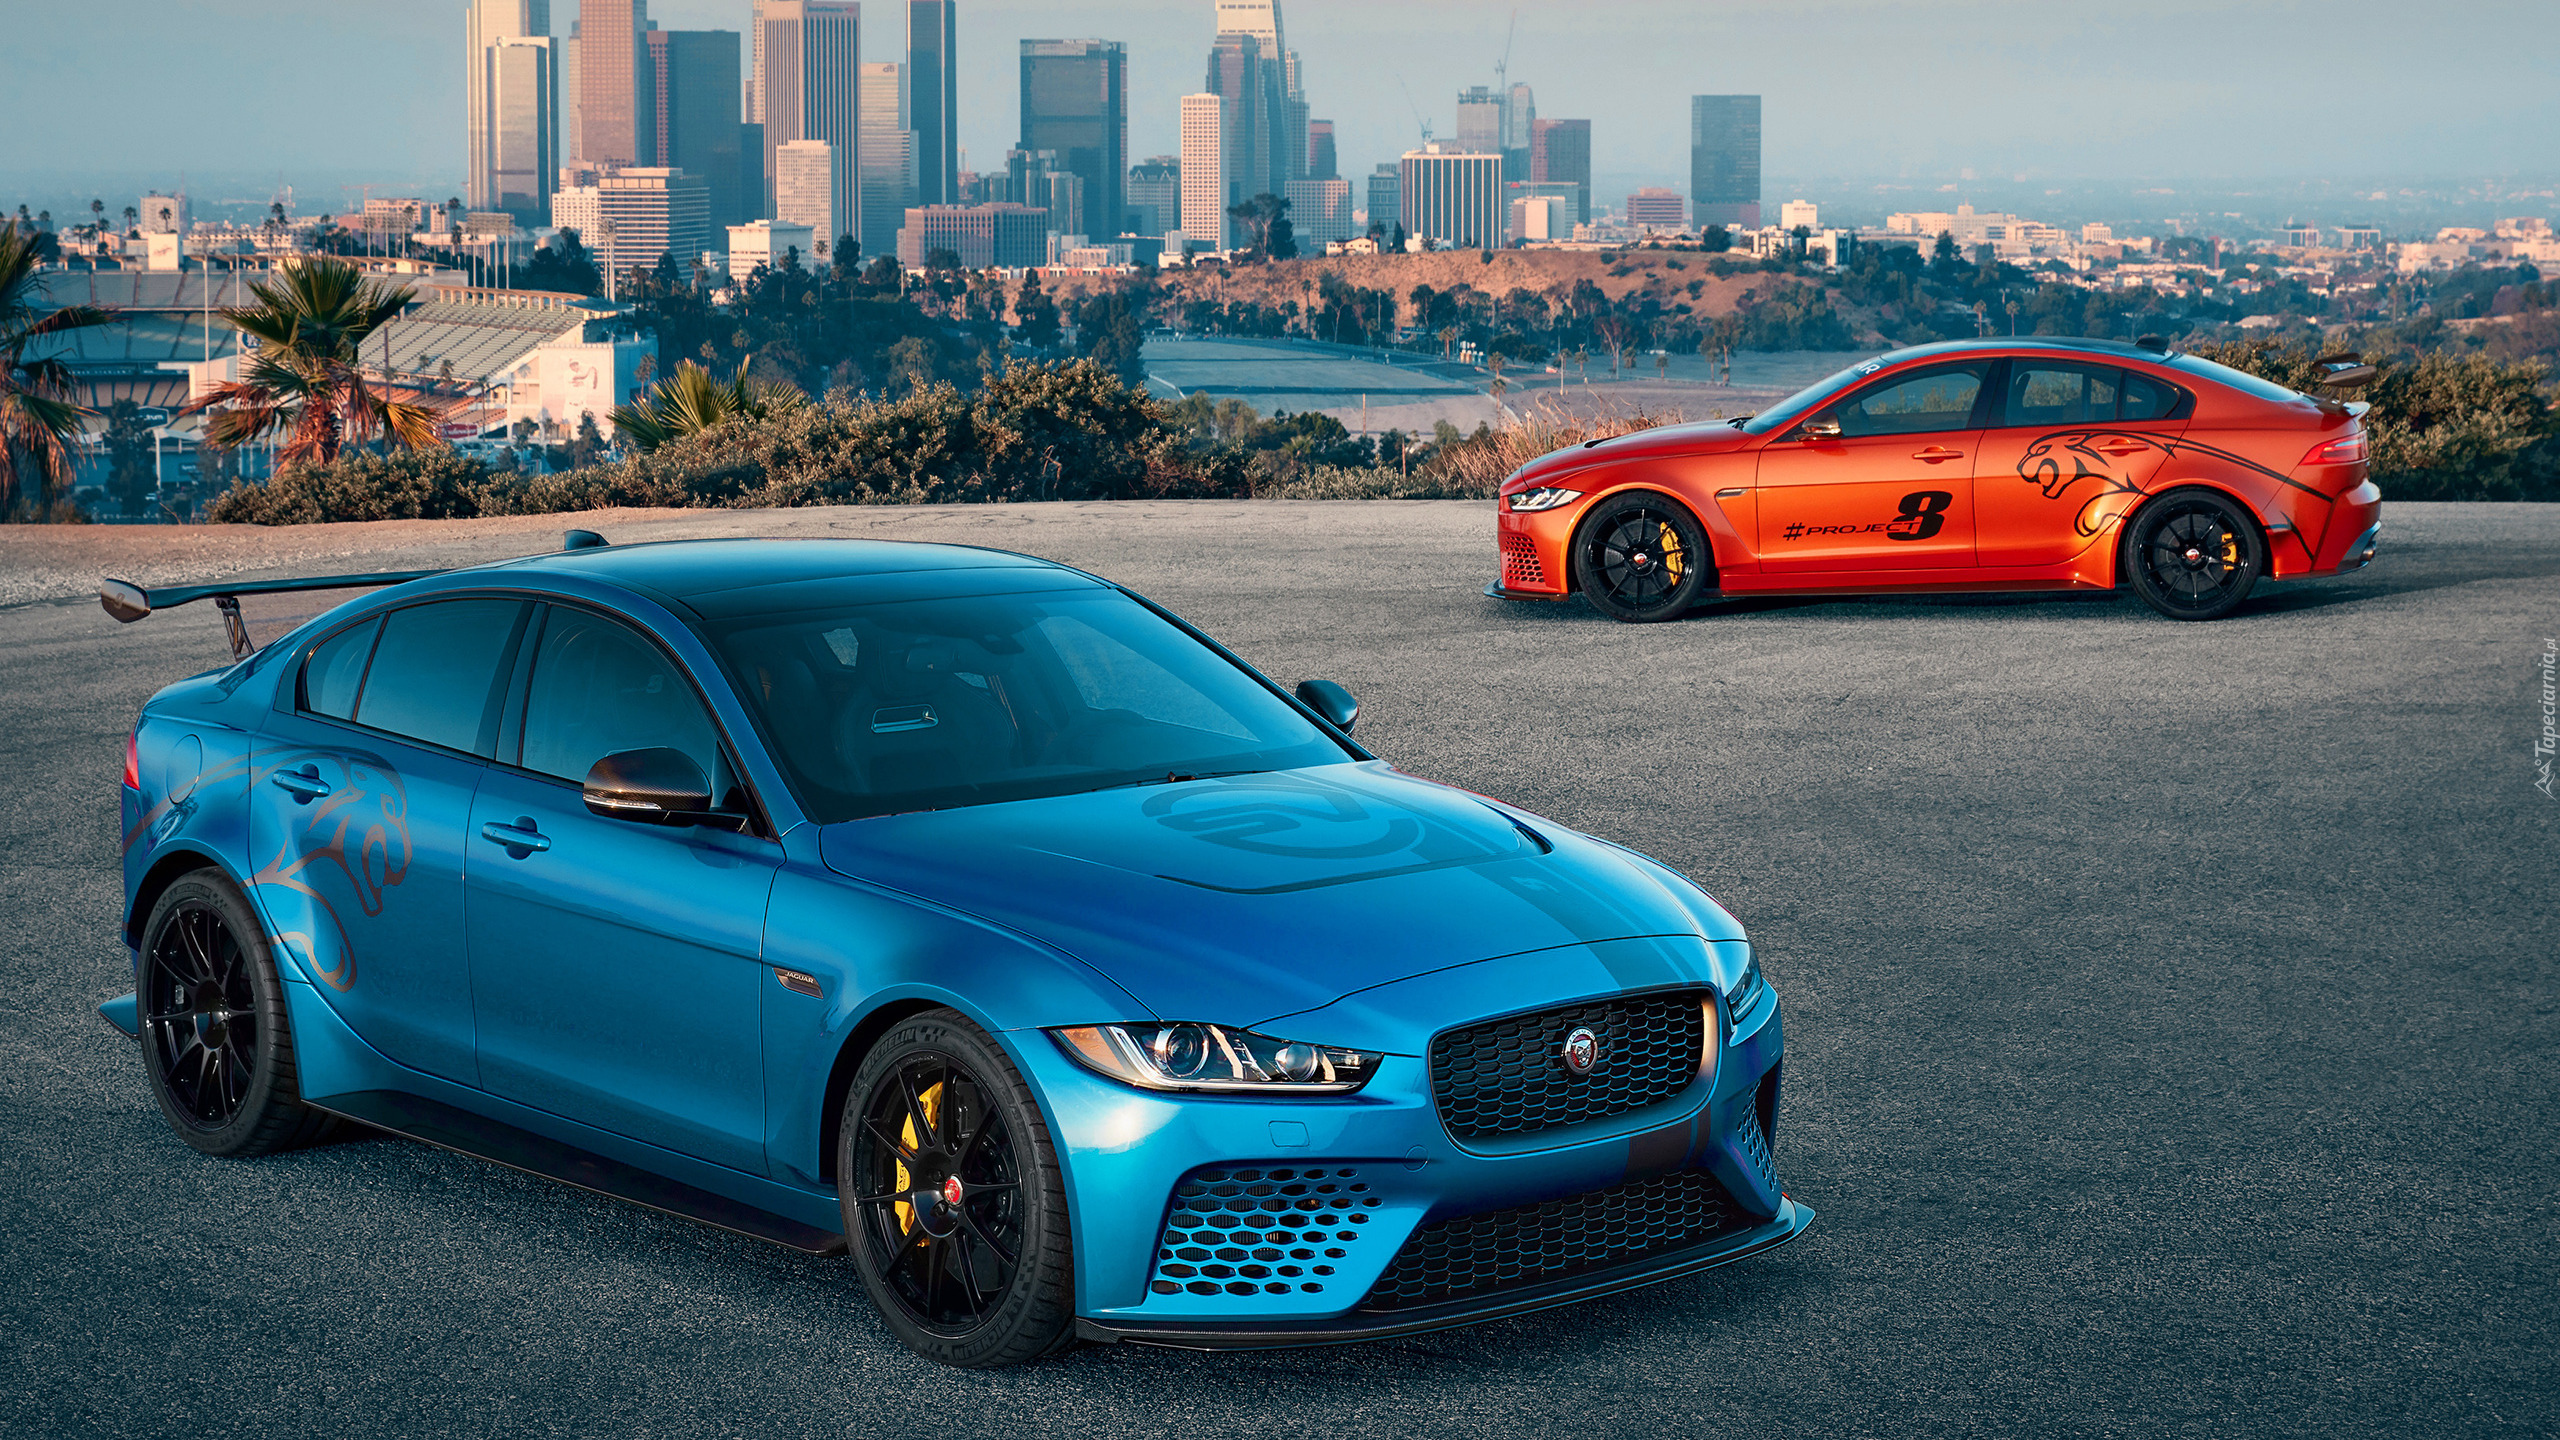 Dwa, Samochody, Jaguar XE SV Projekt 8, Niebieski, Pomarańczowy